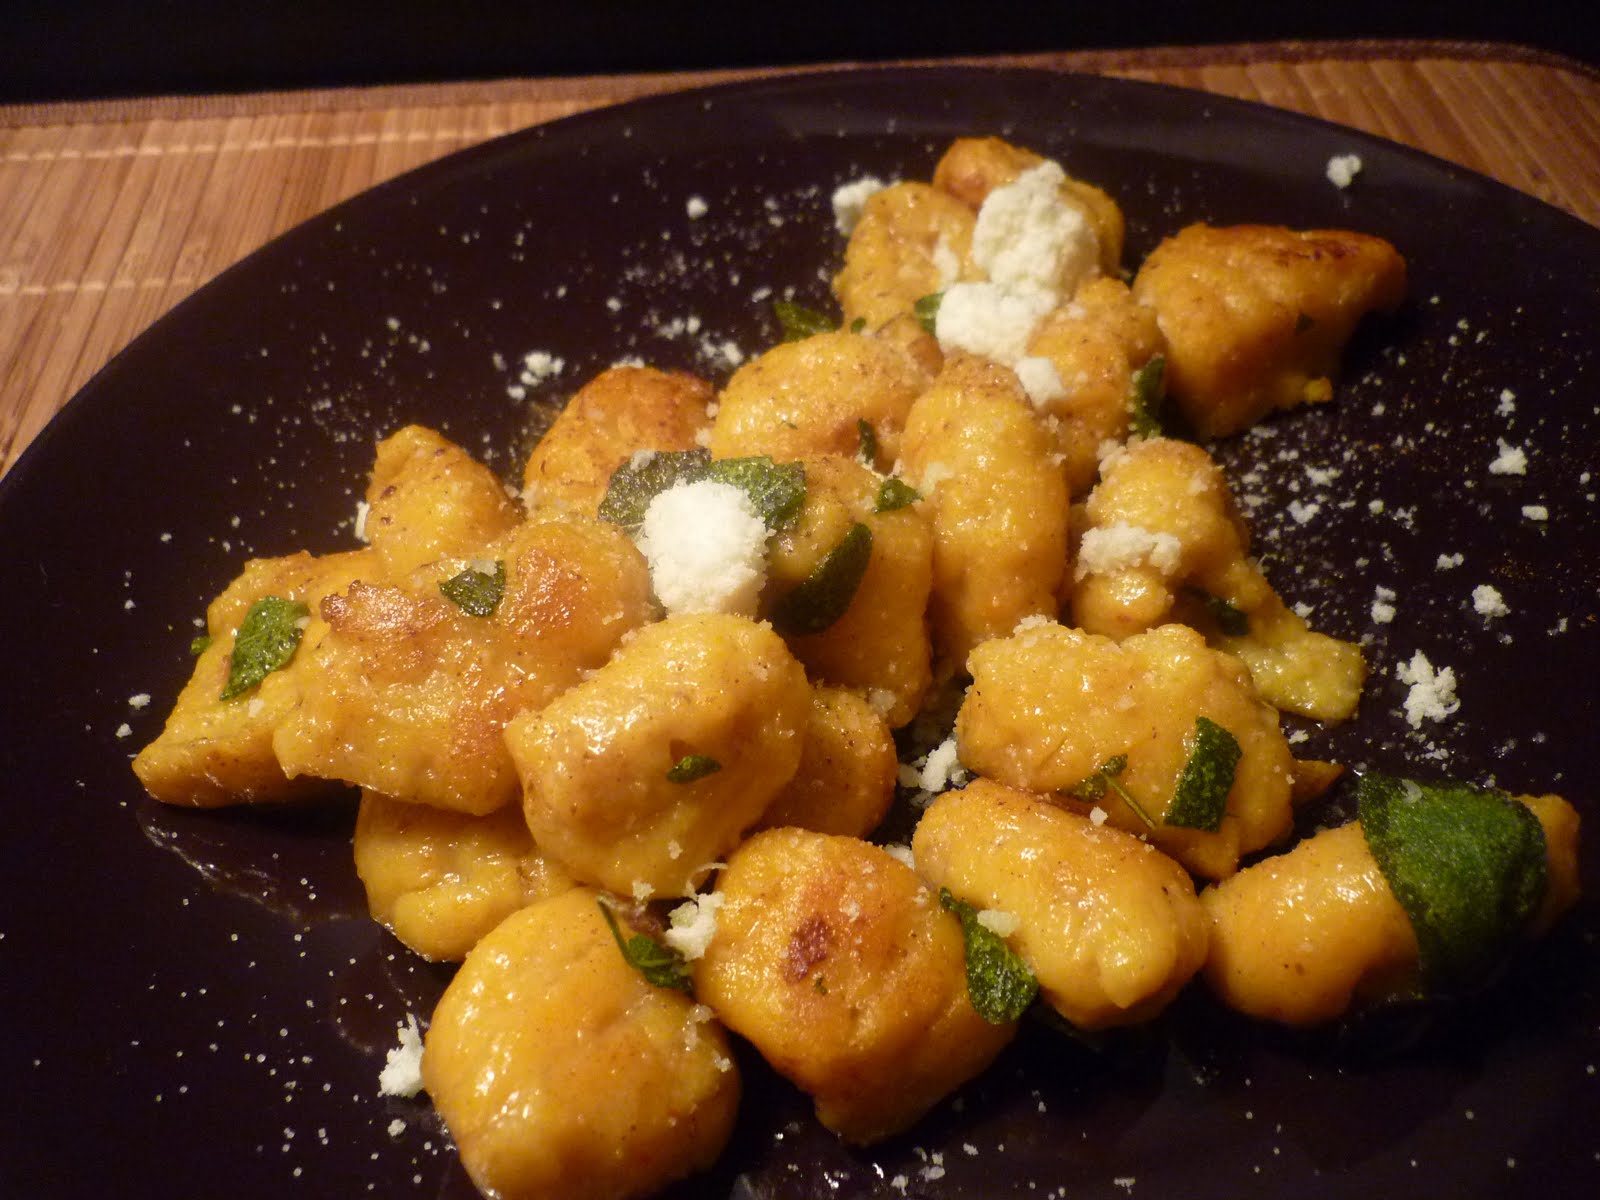 estrellacanela: Kartoffel-Kürbis-Gnocchi in Honig-Salbei-Sauce mit Zimt